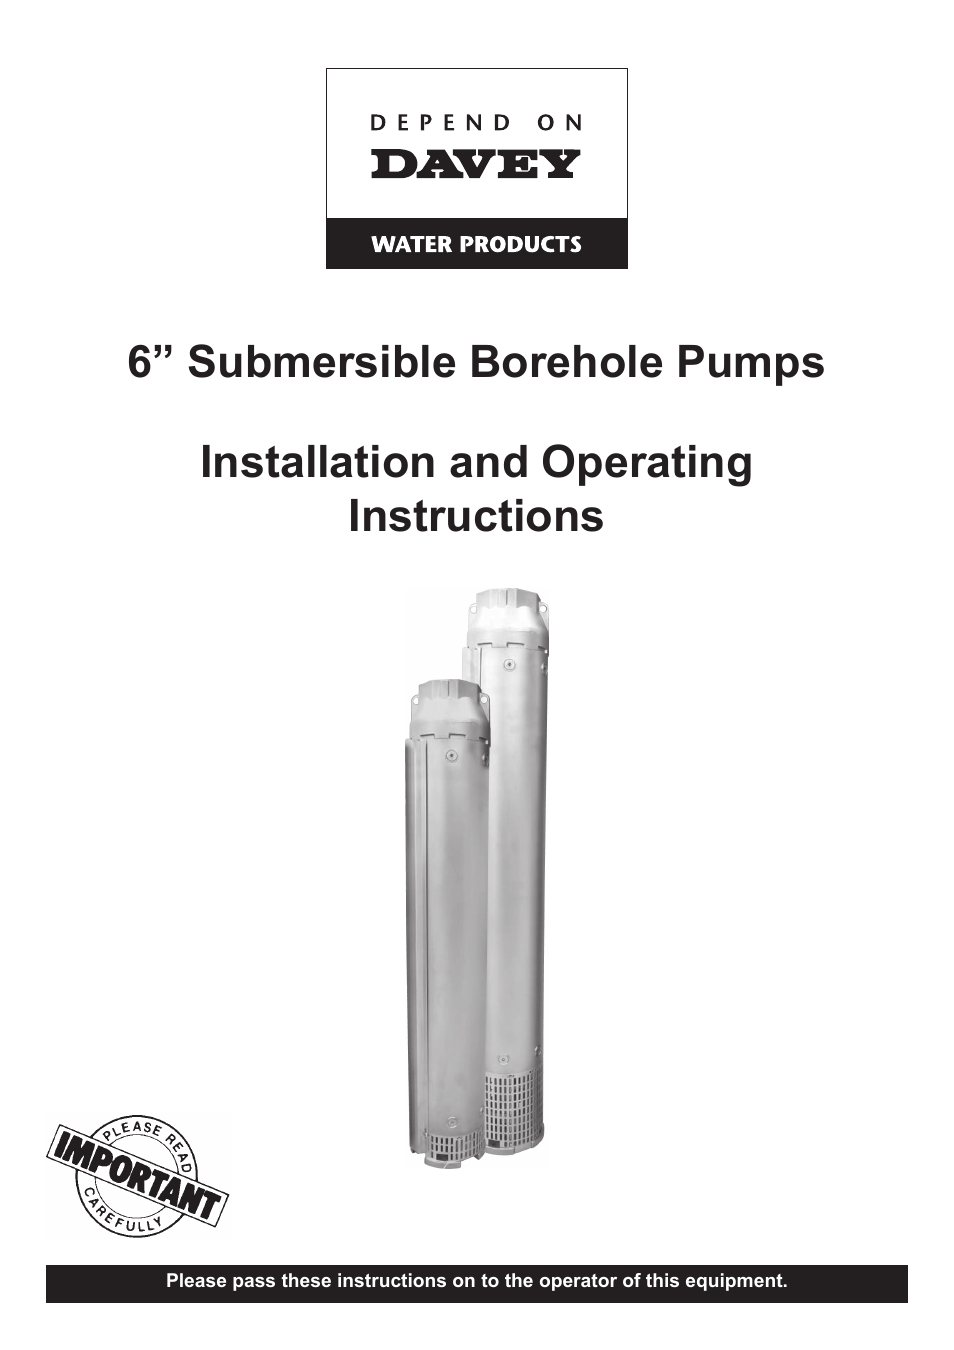 6 Submersible Borehole Pumps